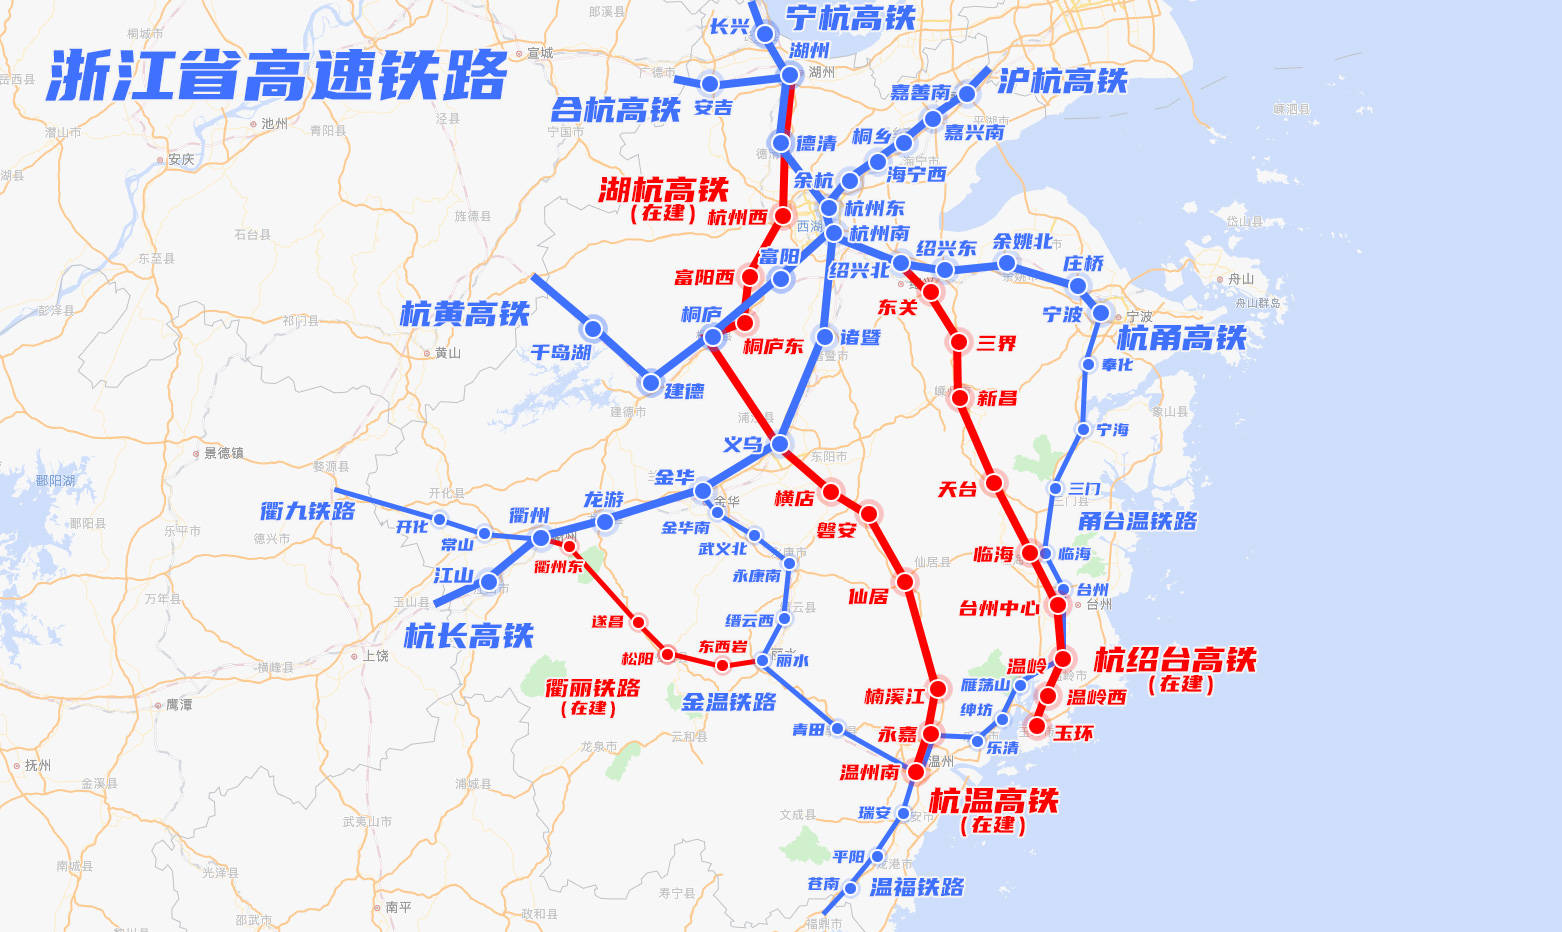 湖杭高速铁路,杭绍台高速铁路等9条线路,快速铁路则包括甬台温铁路,温